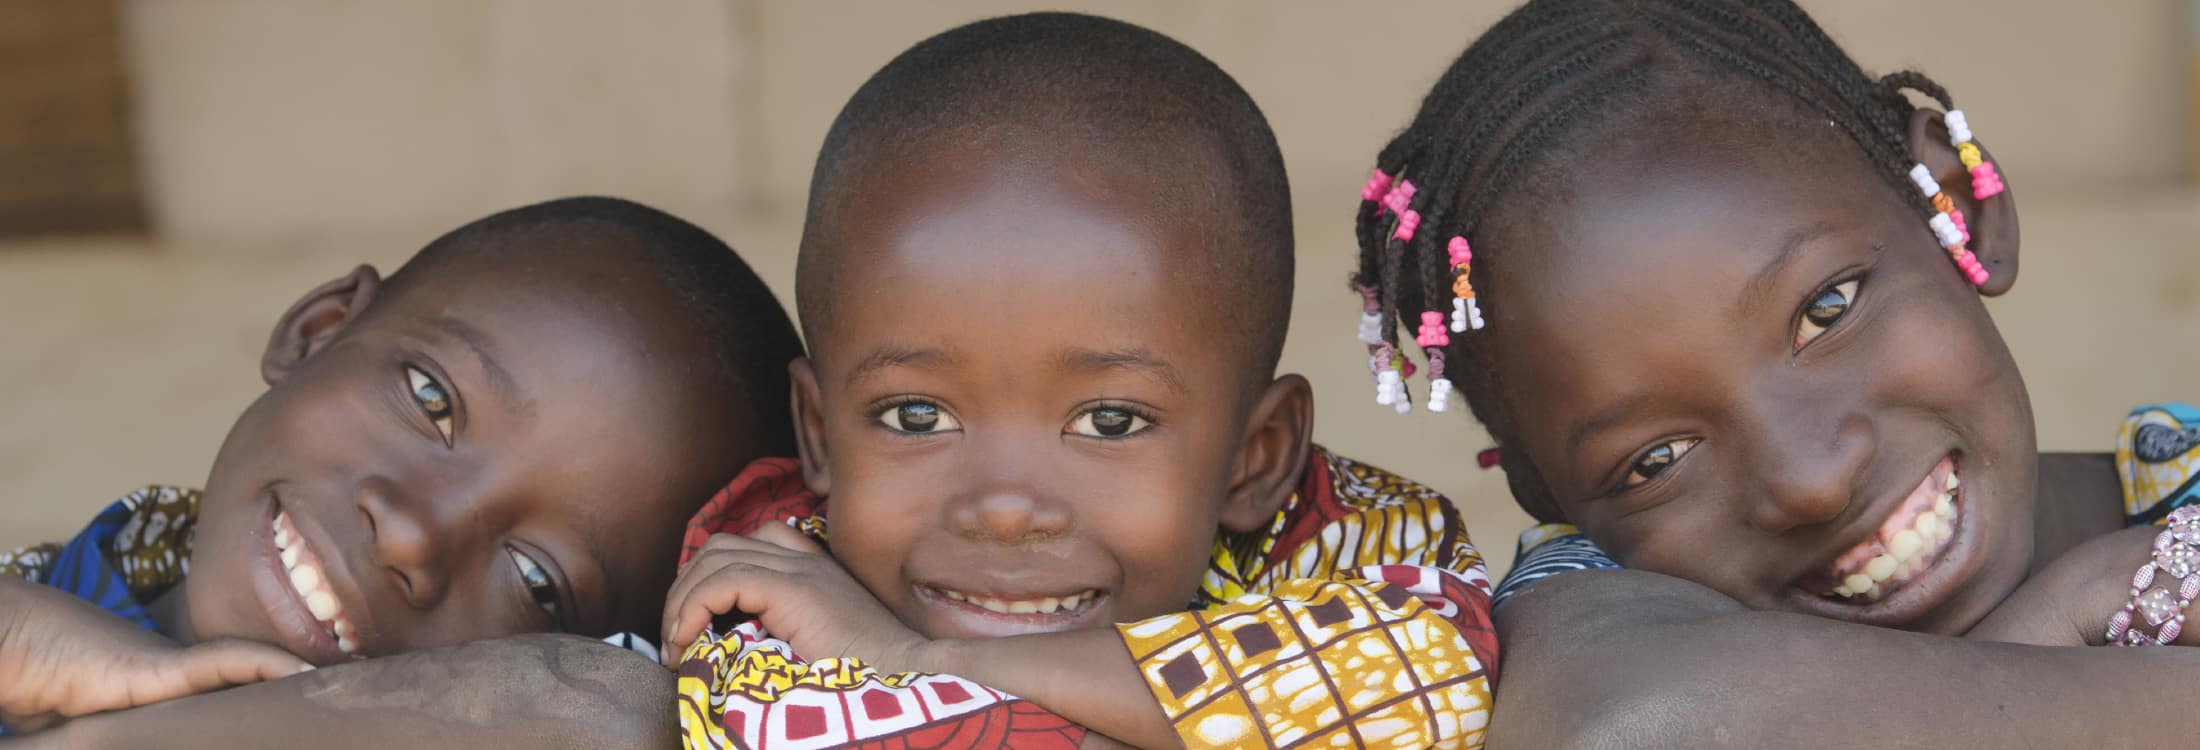 Envie dinheiro aos seus entes queridos no Mali - rápido e seguro com sendvalu